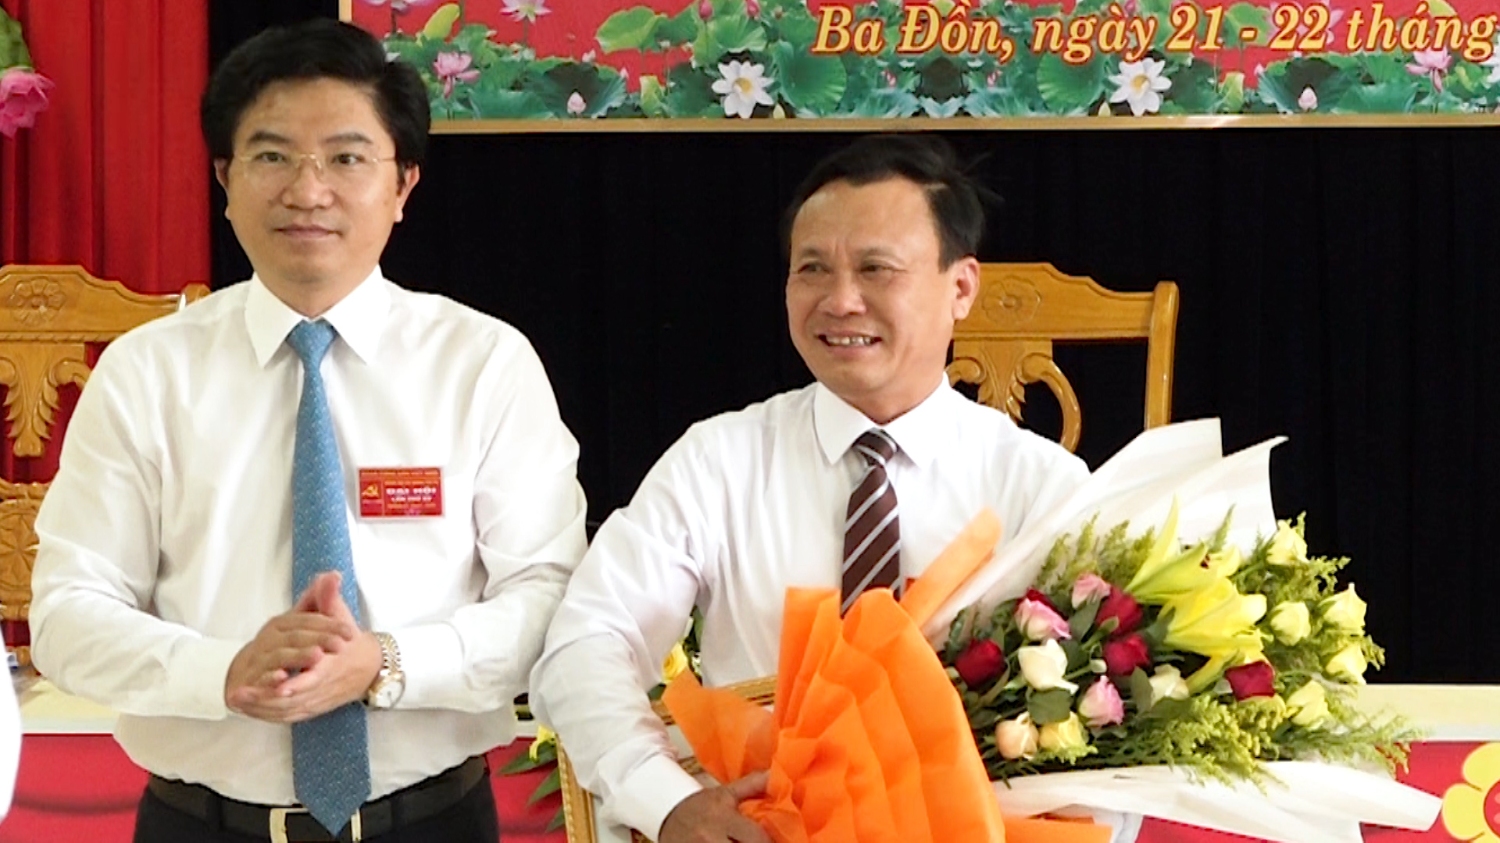 đồng chí Trương An Ninh tặng huy hiệu 30 năm tuổi đảng cho đồng chí Phạm Duy Quang